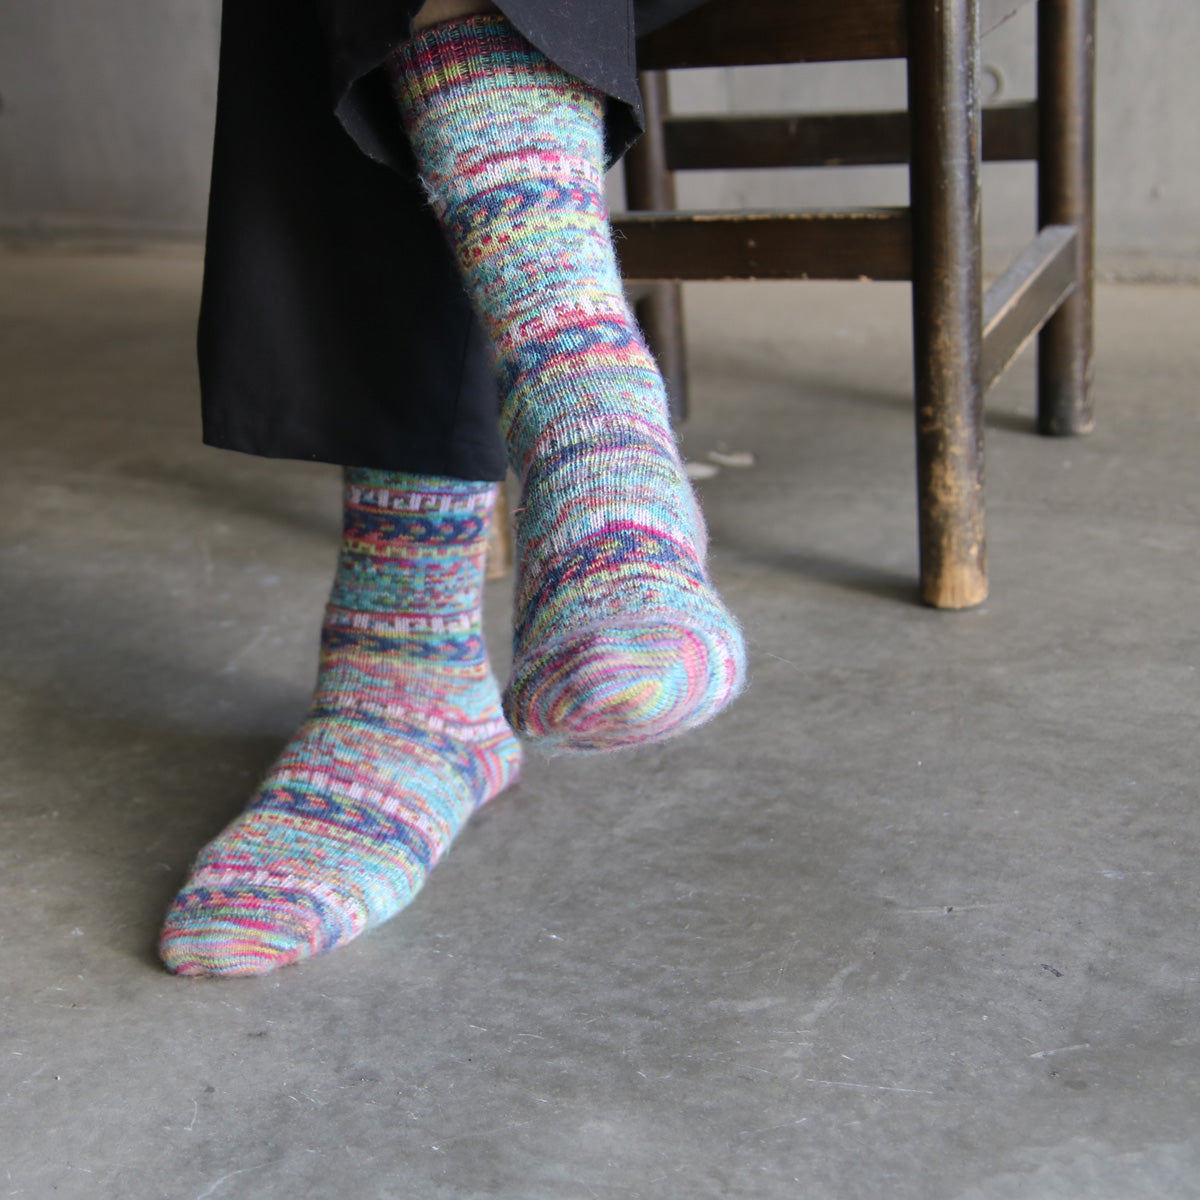 ラナート (LANART) 米国製ベビーアルパカソックス靴下 Artistic Baby Alpaca Socks[FRIDA/BLUE]